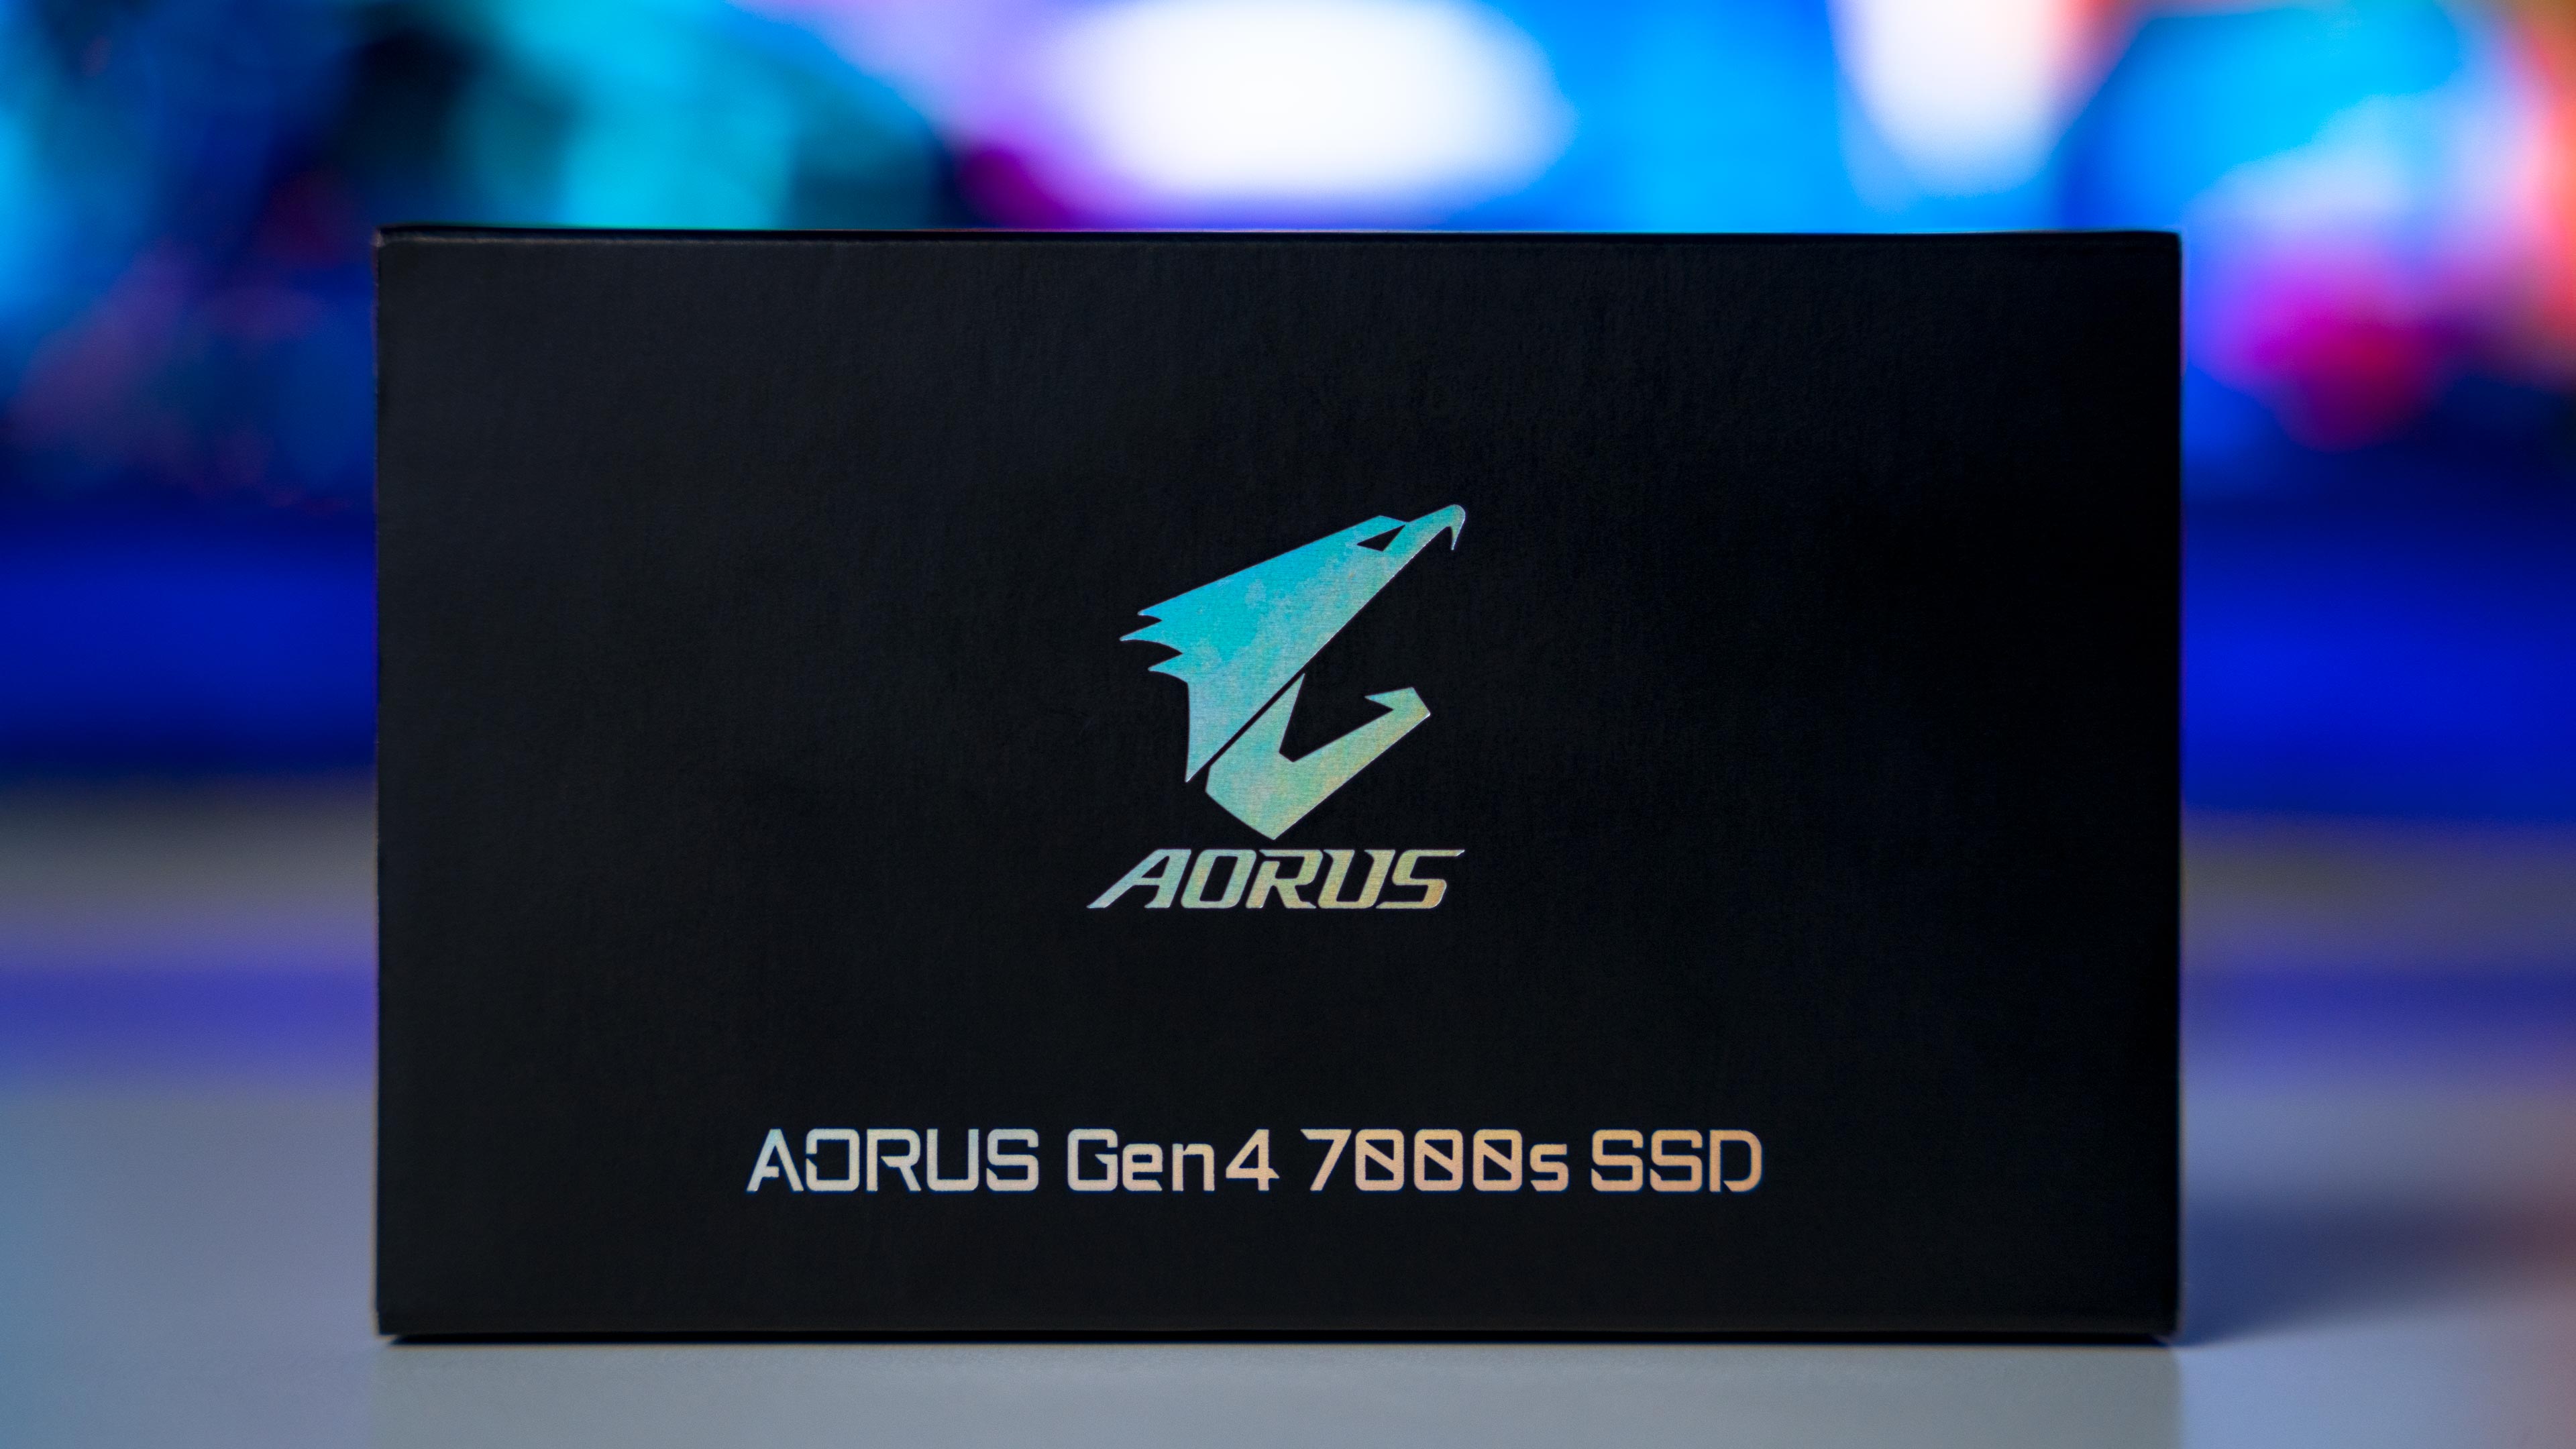 Aorus Gen4 7000s SSD Box (1)